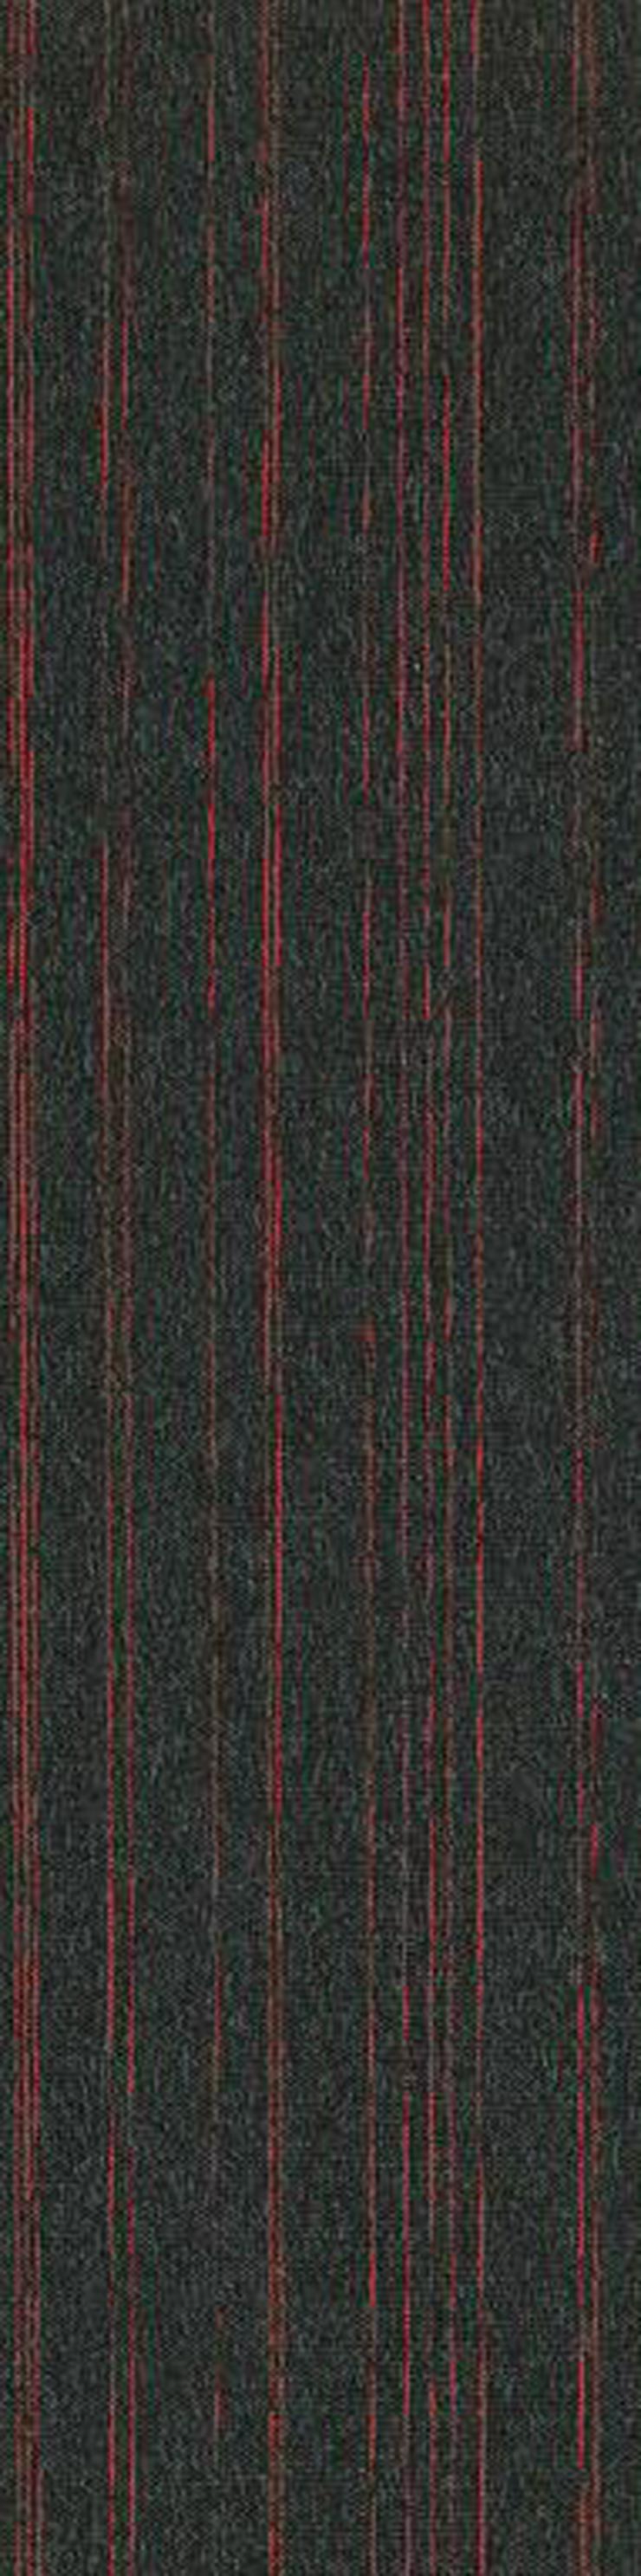 Schöne 25 cm x 100 cm große Teppichfliesen mit Streifenmuster - Teppiche - Bild 1